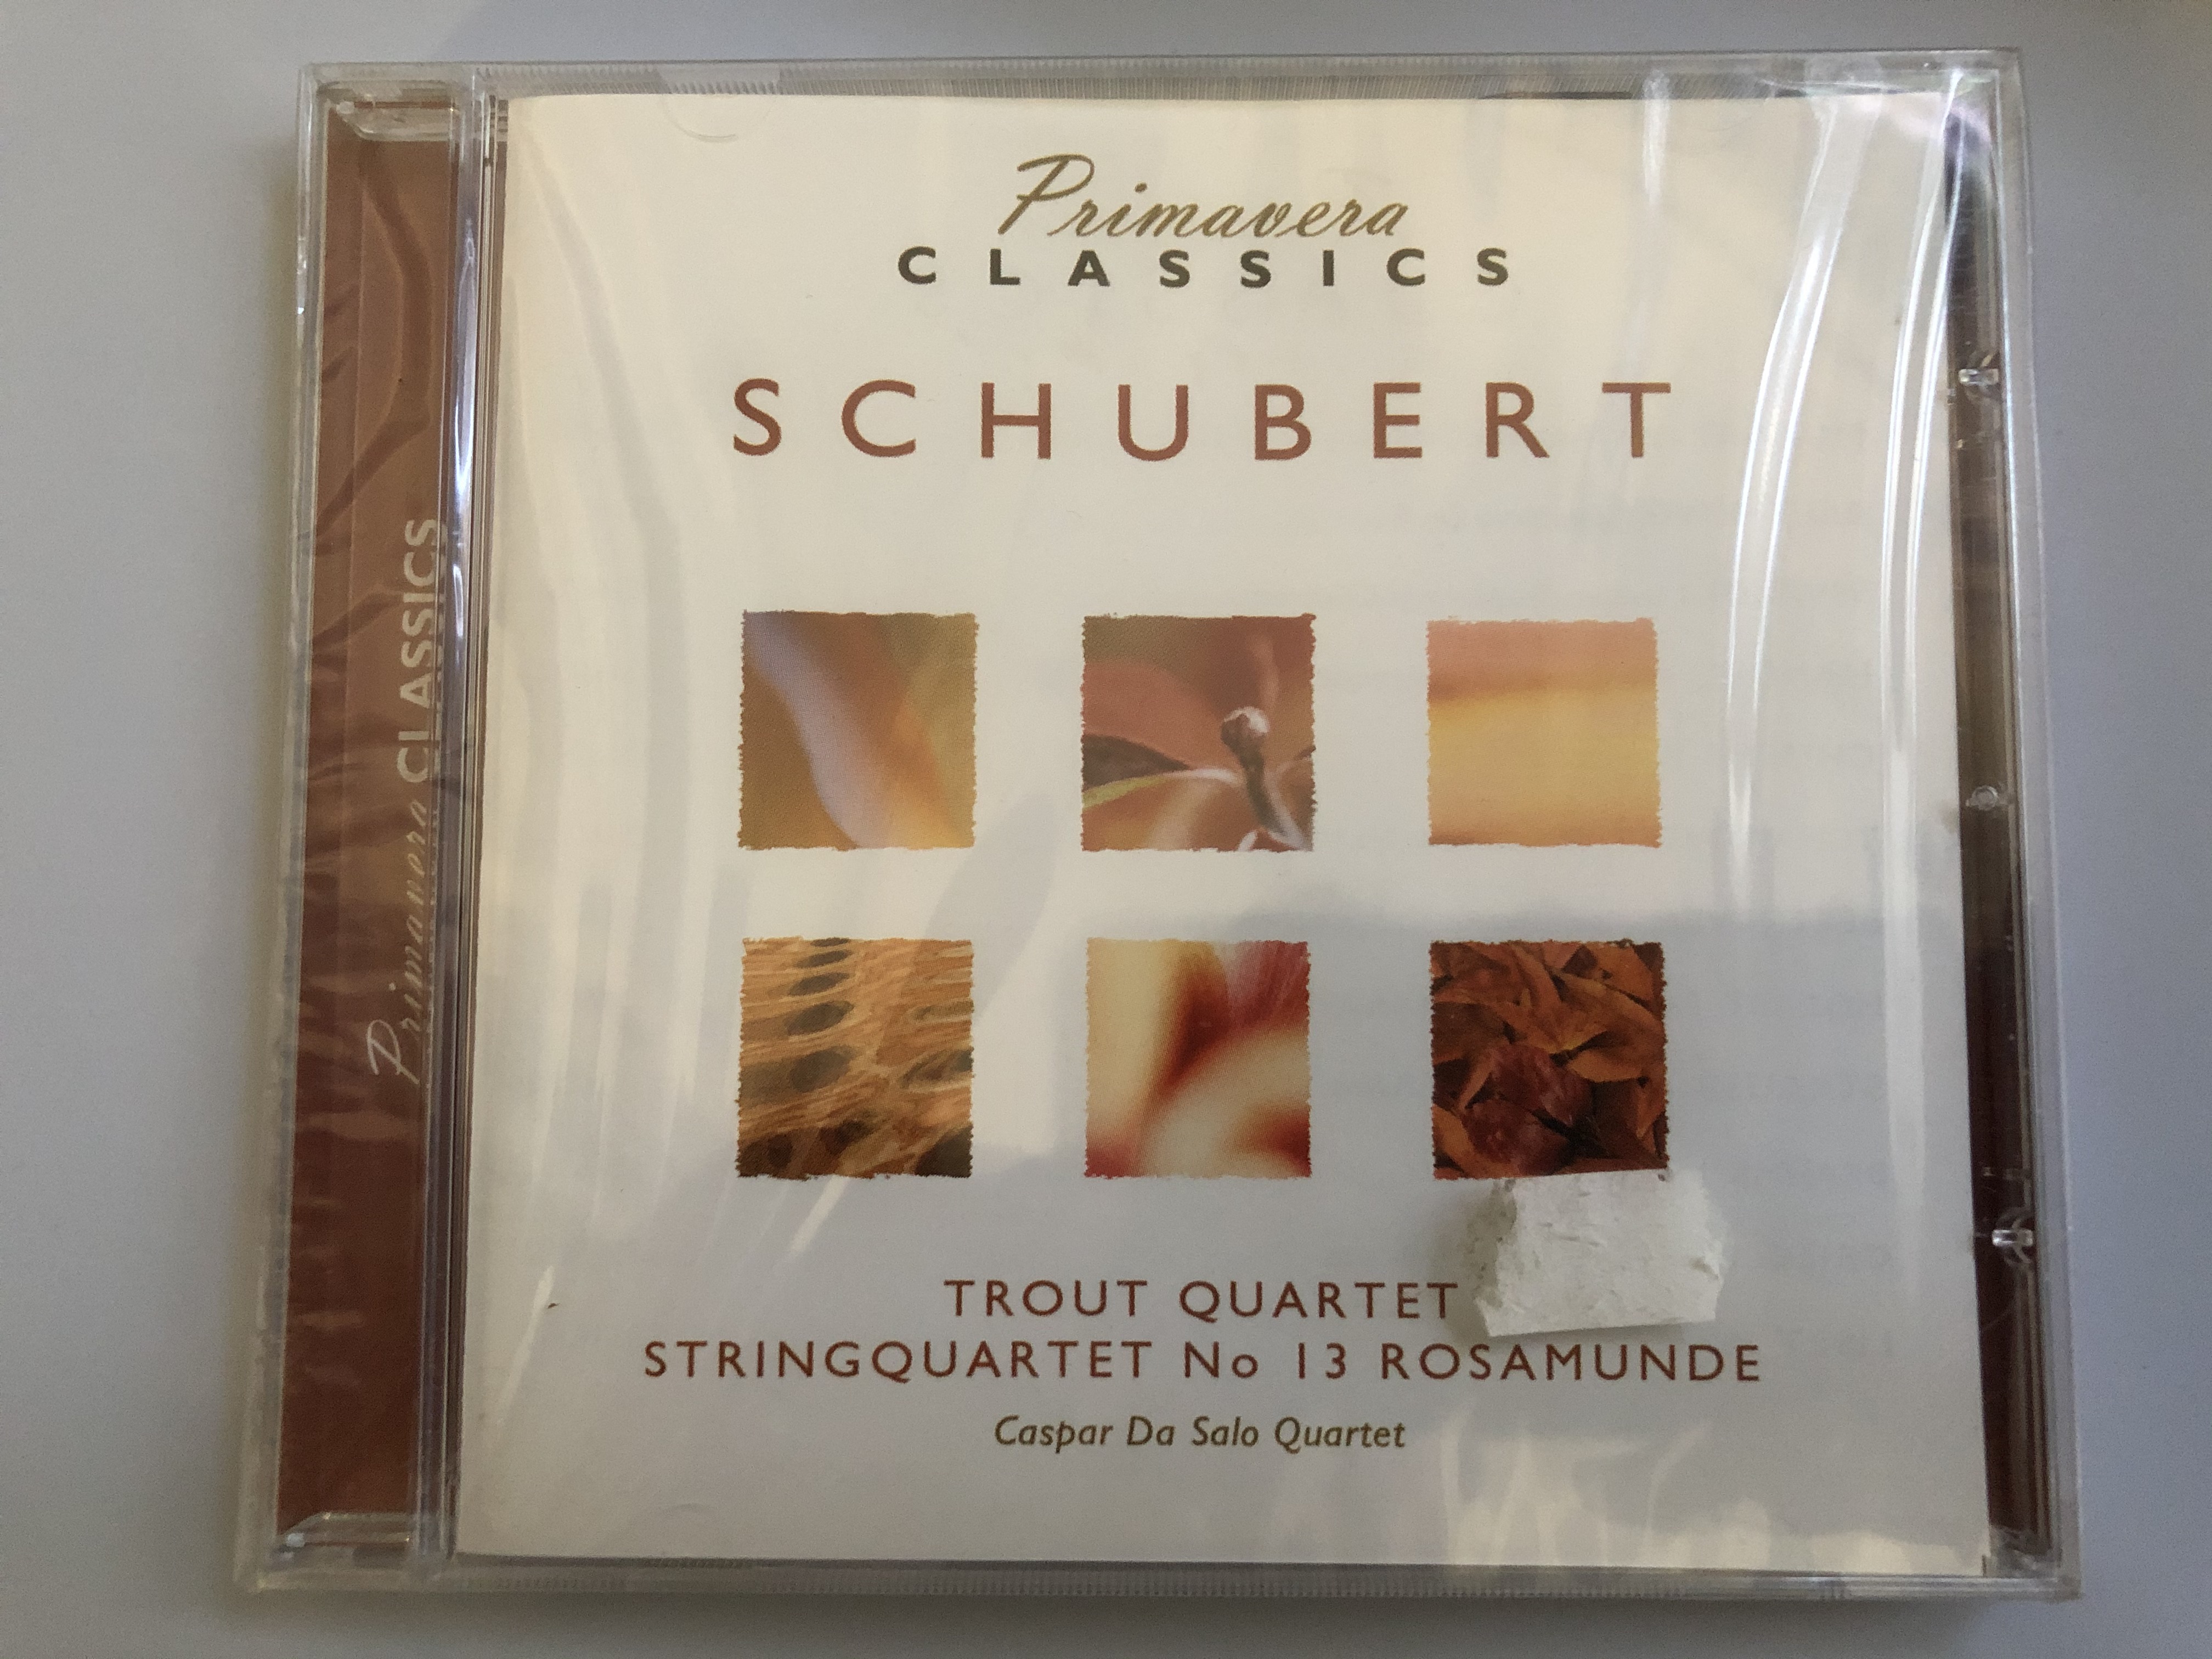 primavera-classics-schubert-trout-quartet-stringquartet-no.-13-rosamunde-caspar-da-salo-quartet-luxury-multimedia-audio-cd-2006-3516122-1-.jpg